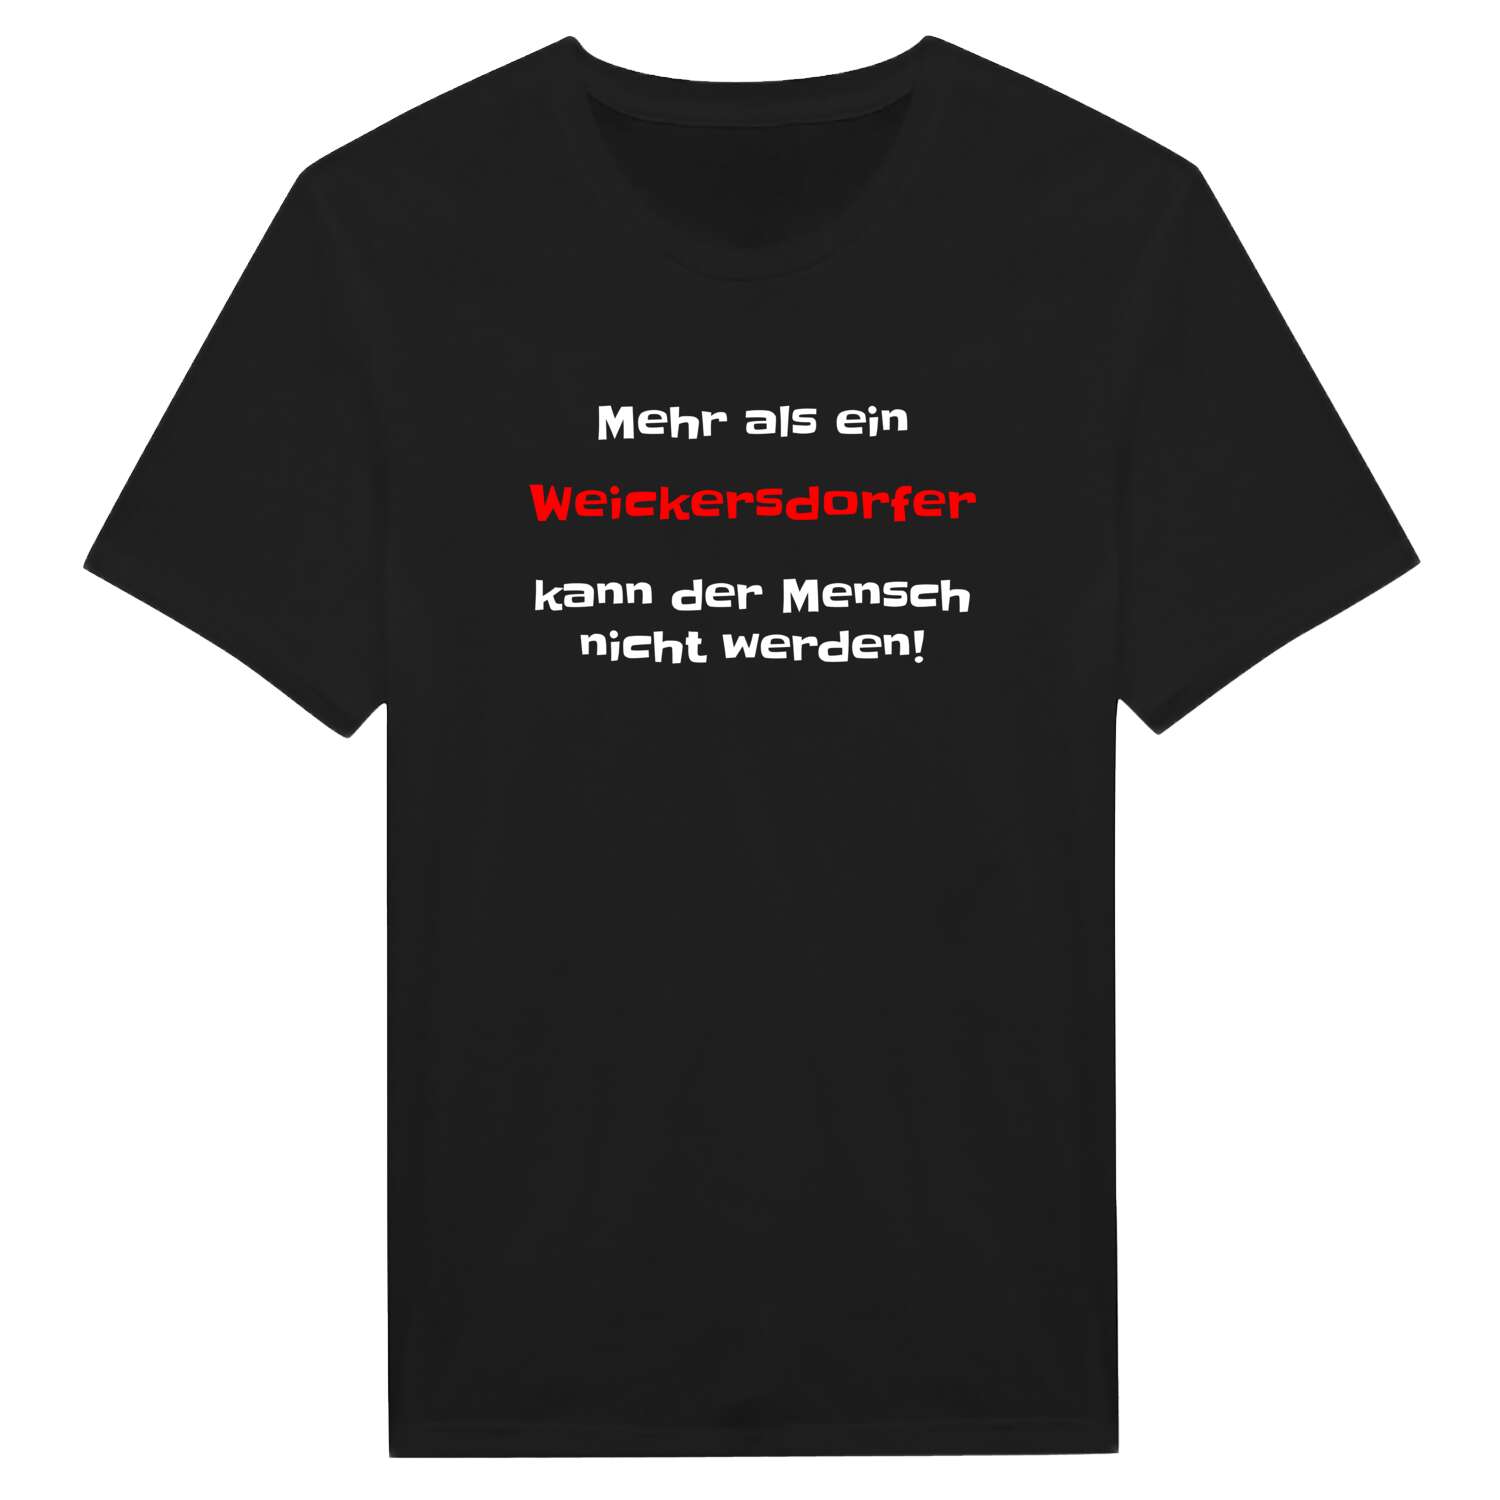 Weickersdorf T-Shirt »Mehr als ein«